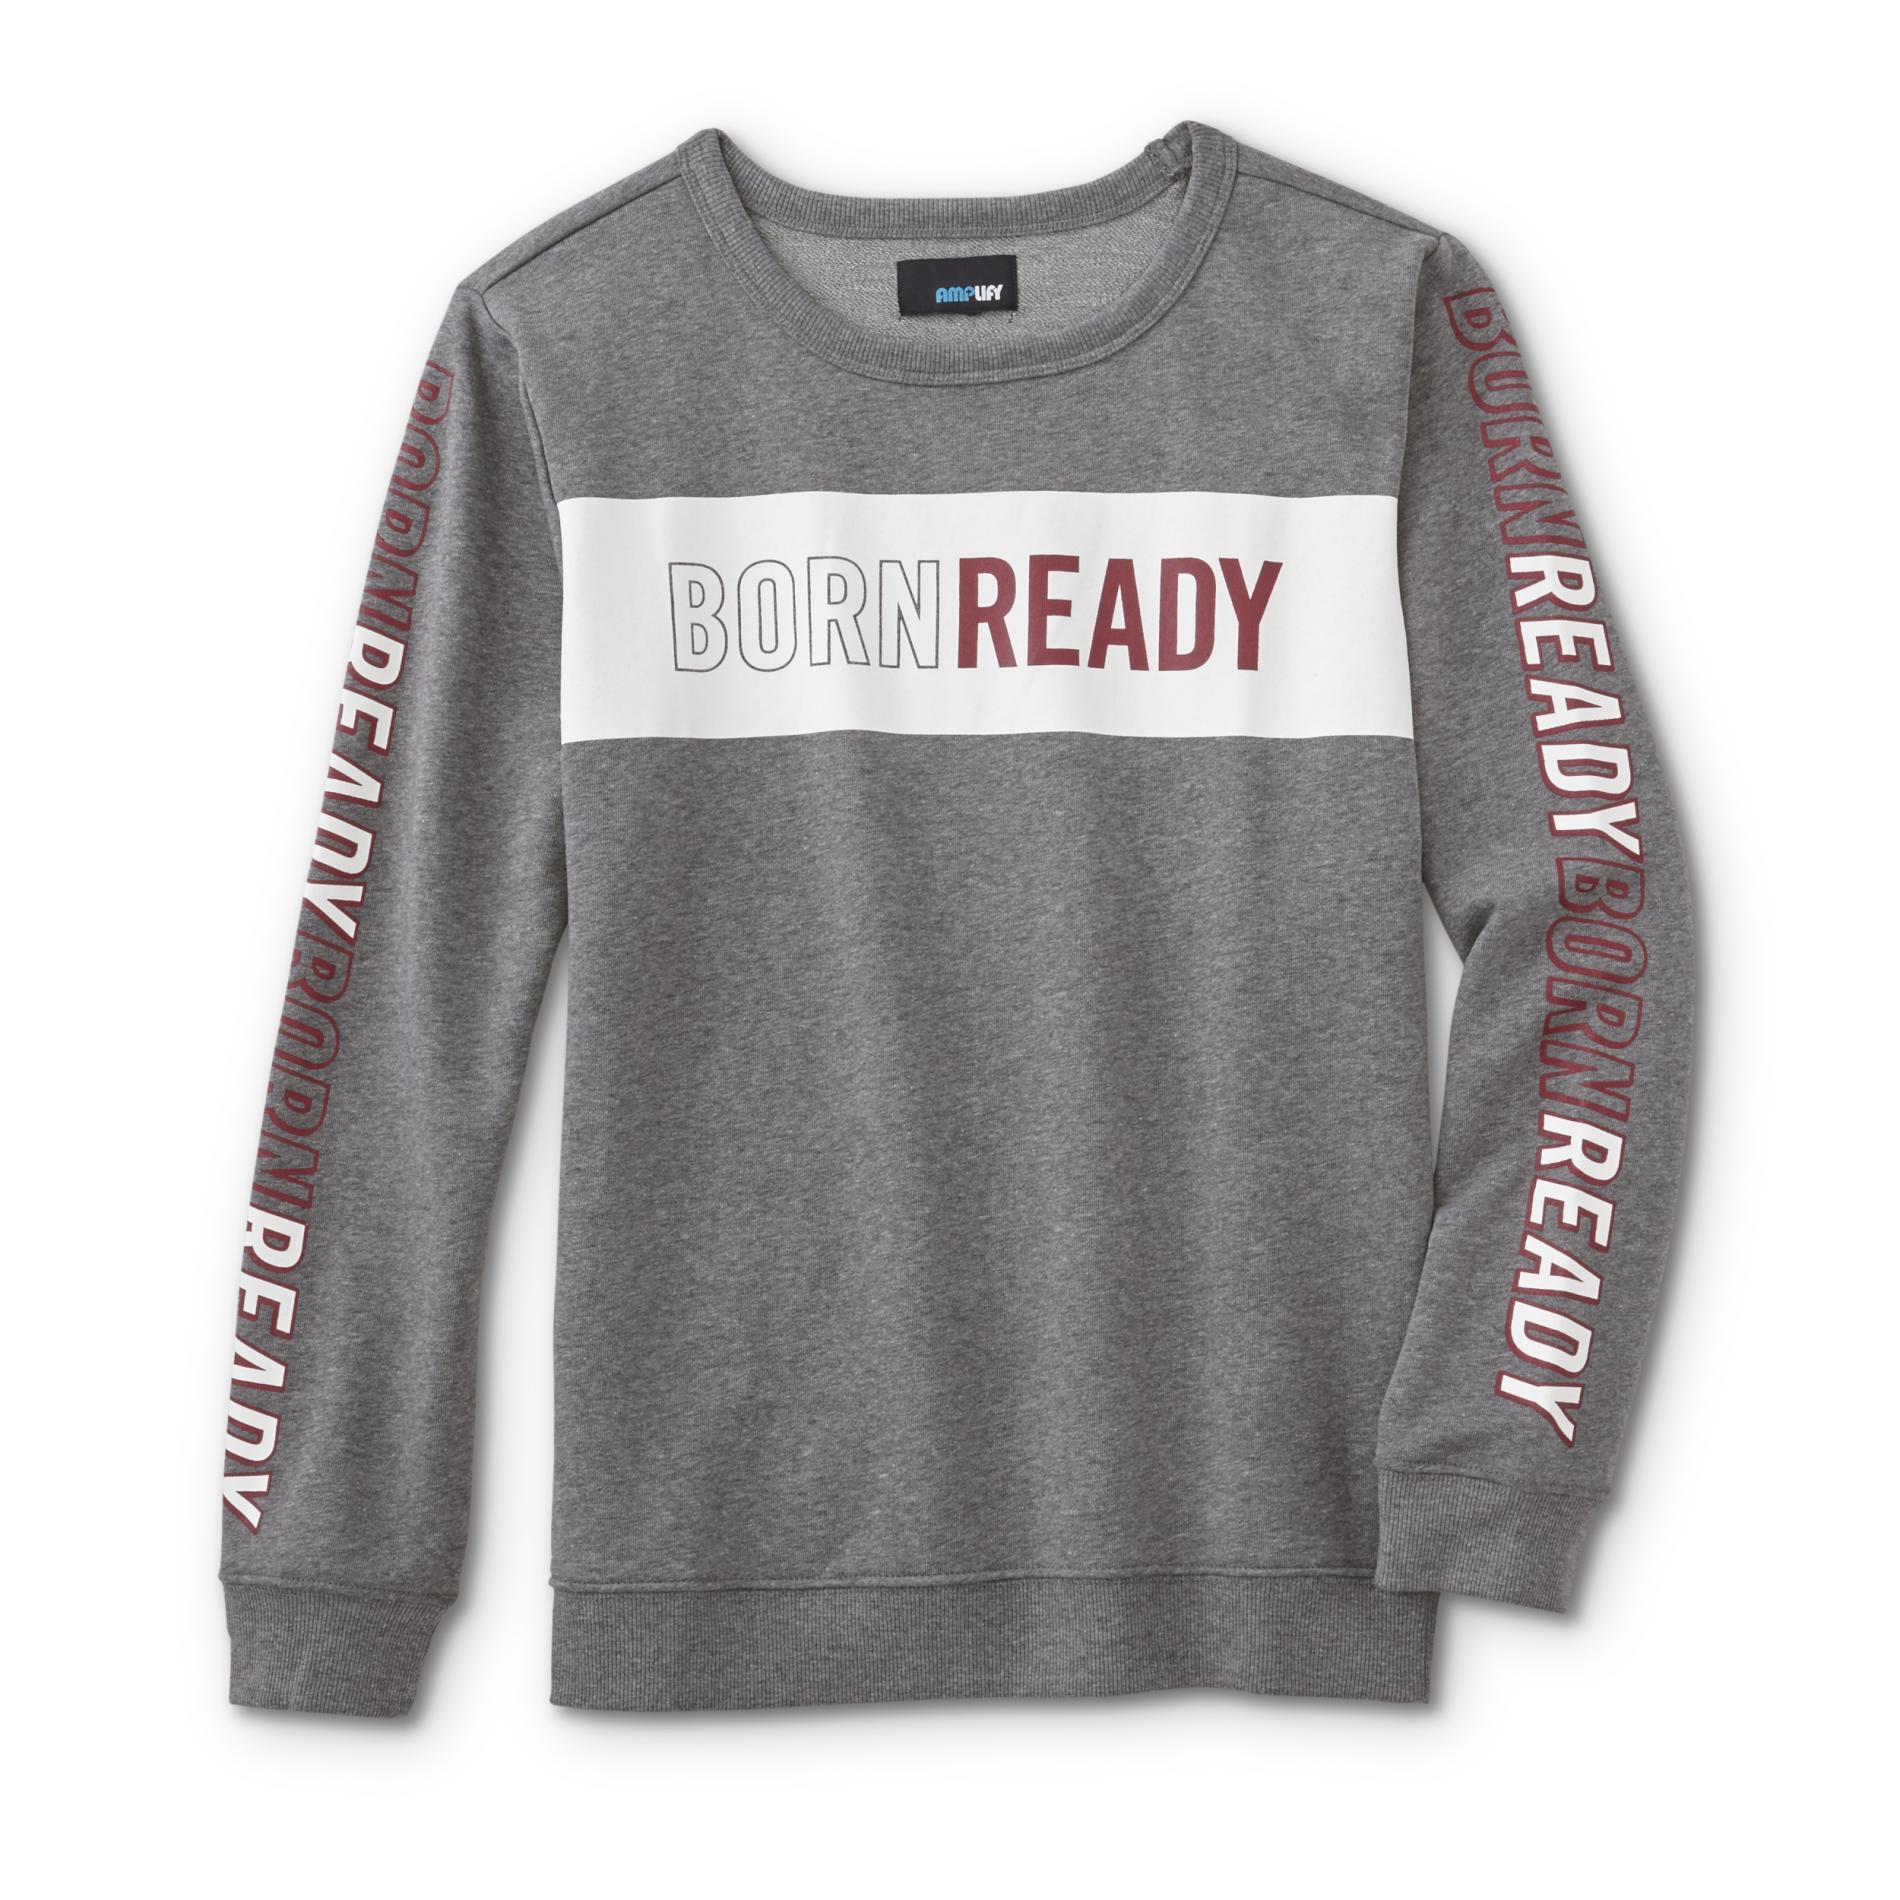 Amplify Boys' Sweatshirt - Born Ready